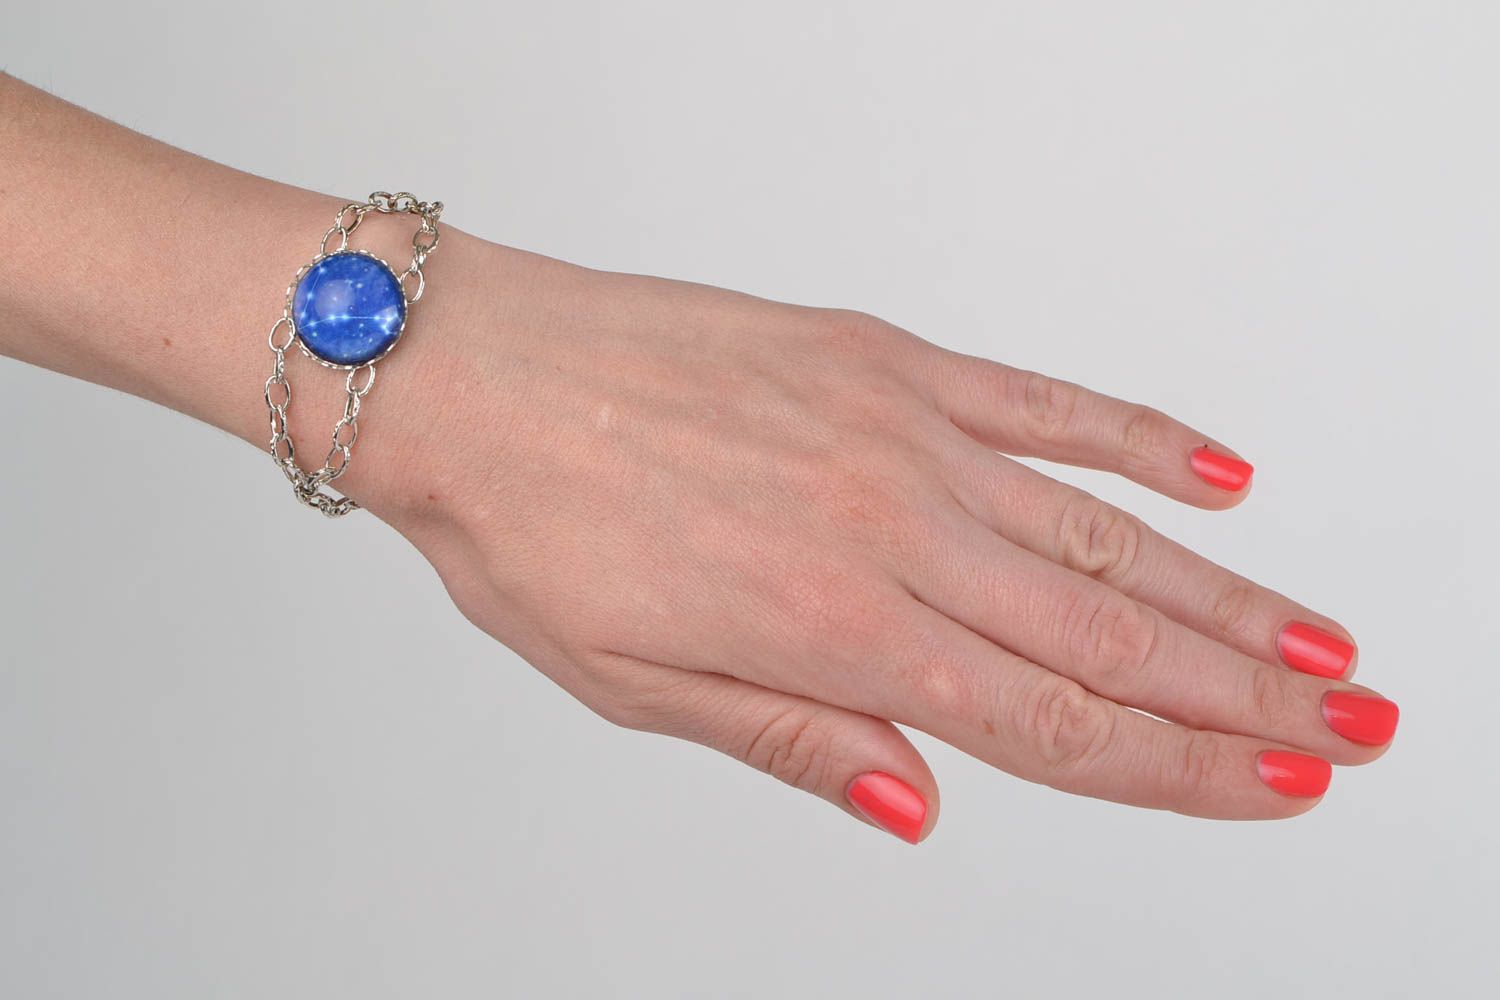 Bracelet chaîne métallique avec verre bleu fait main constellation des Poissons photo 1